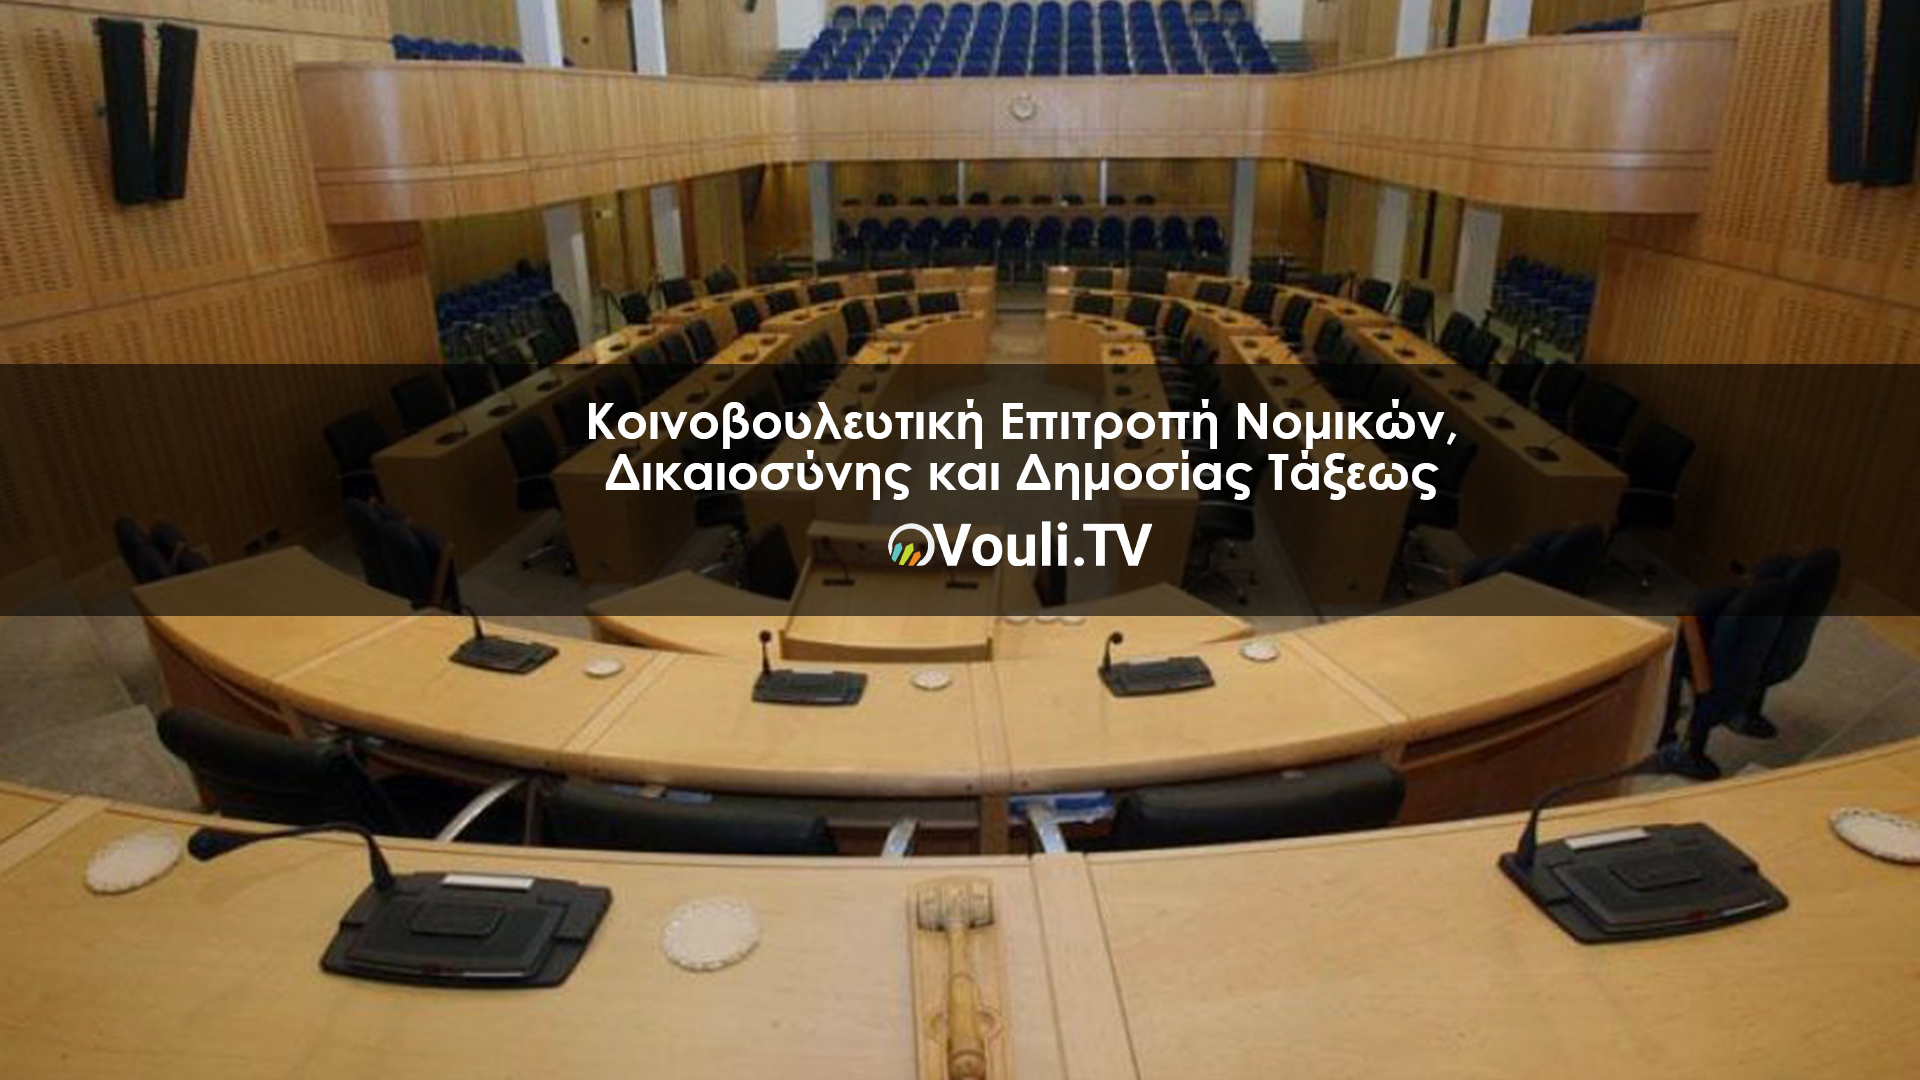 Κοινοβουλευτική Επιτροπή Νομικών, Δικαιοσύνης και Δημοσίας Τάξεως | Vouli report 28/09/2022